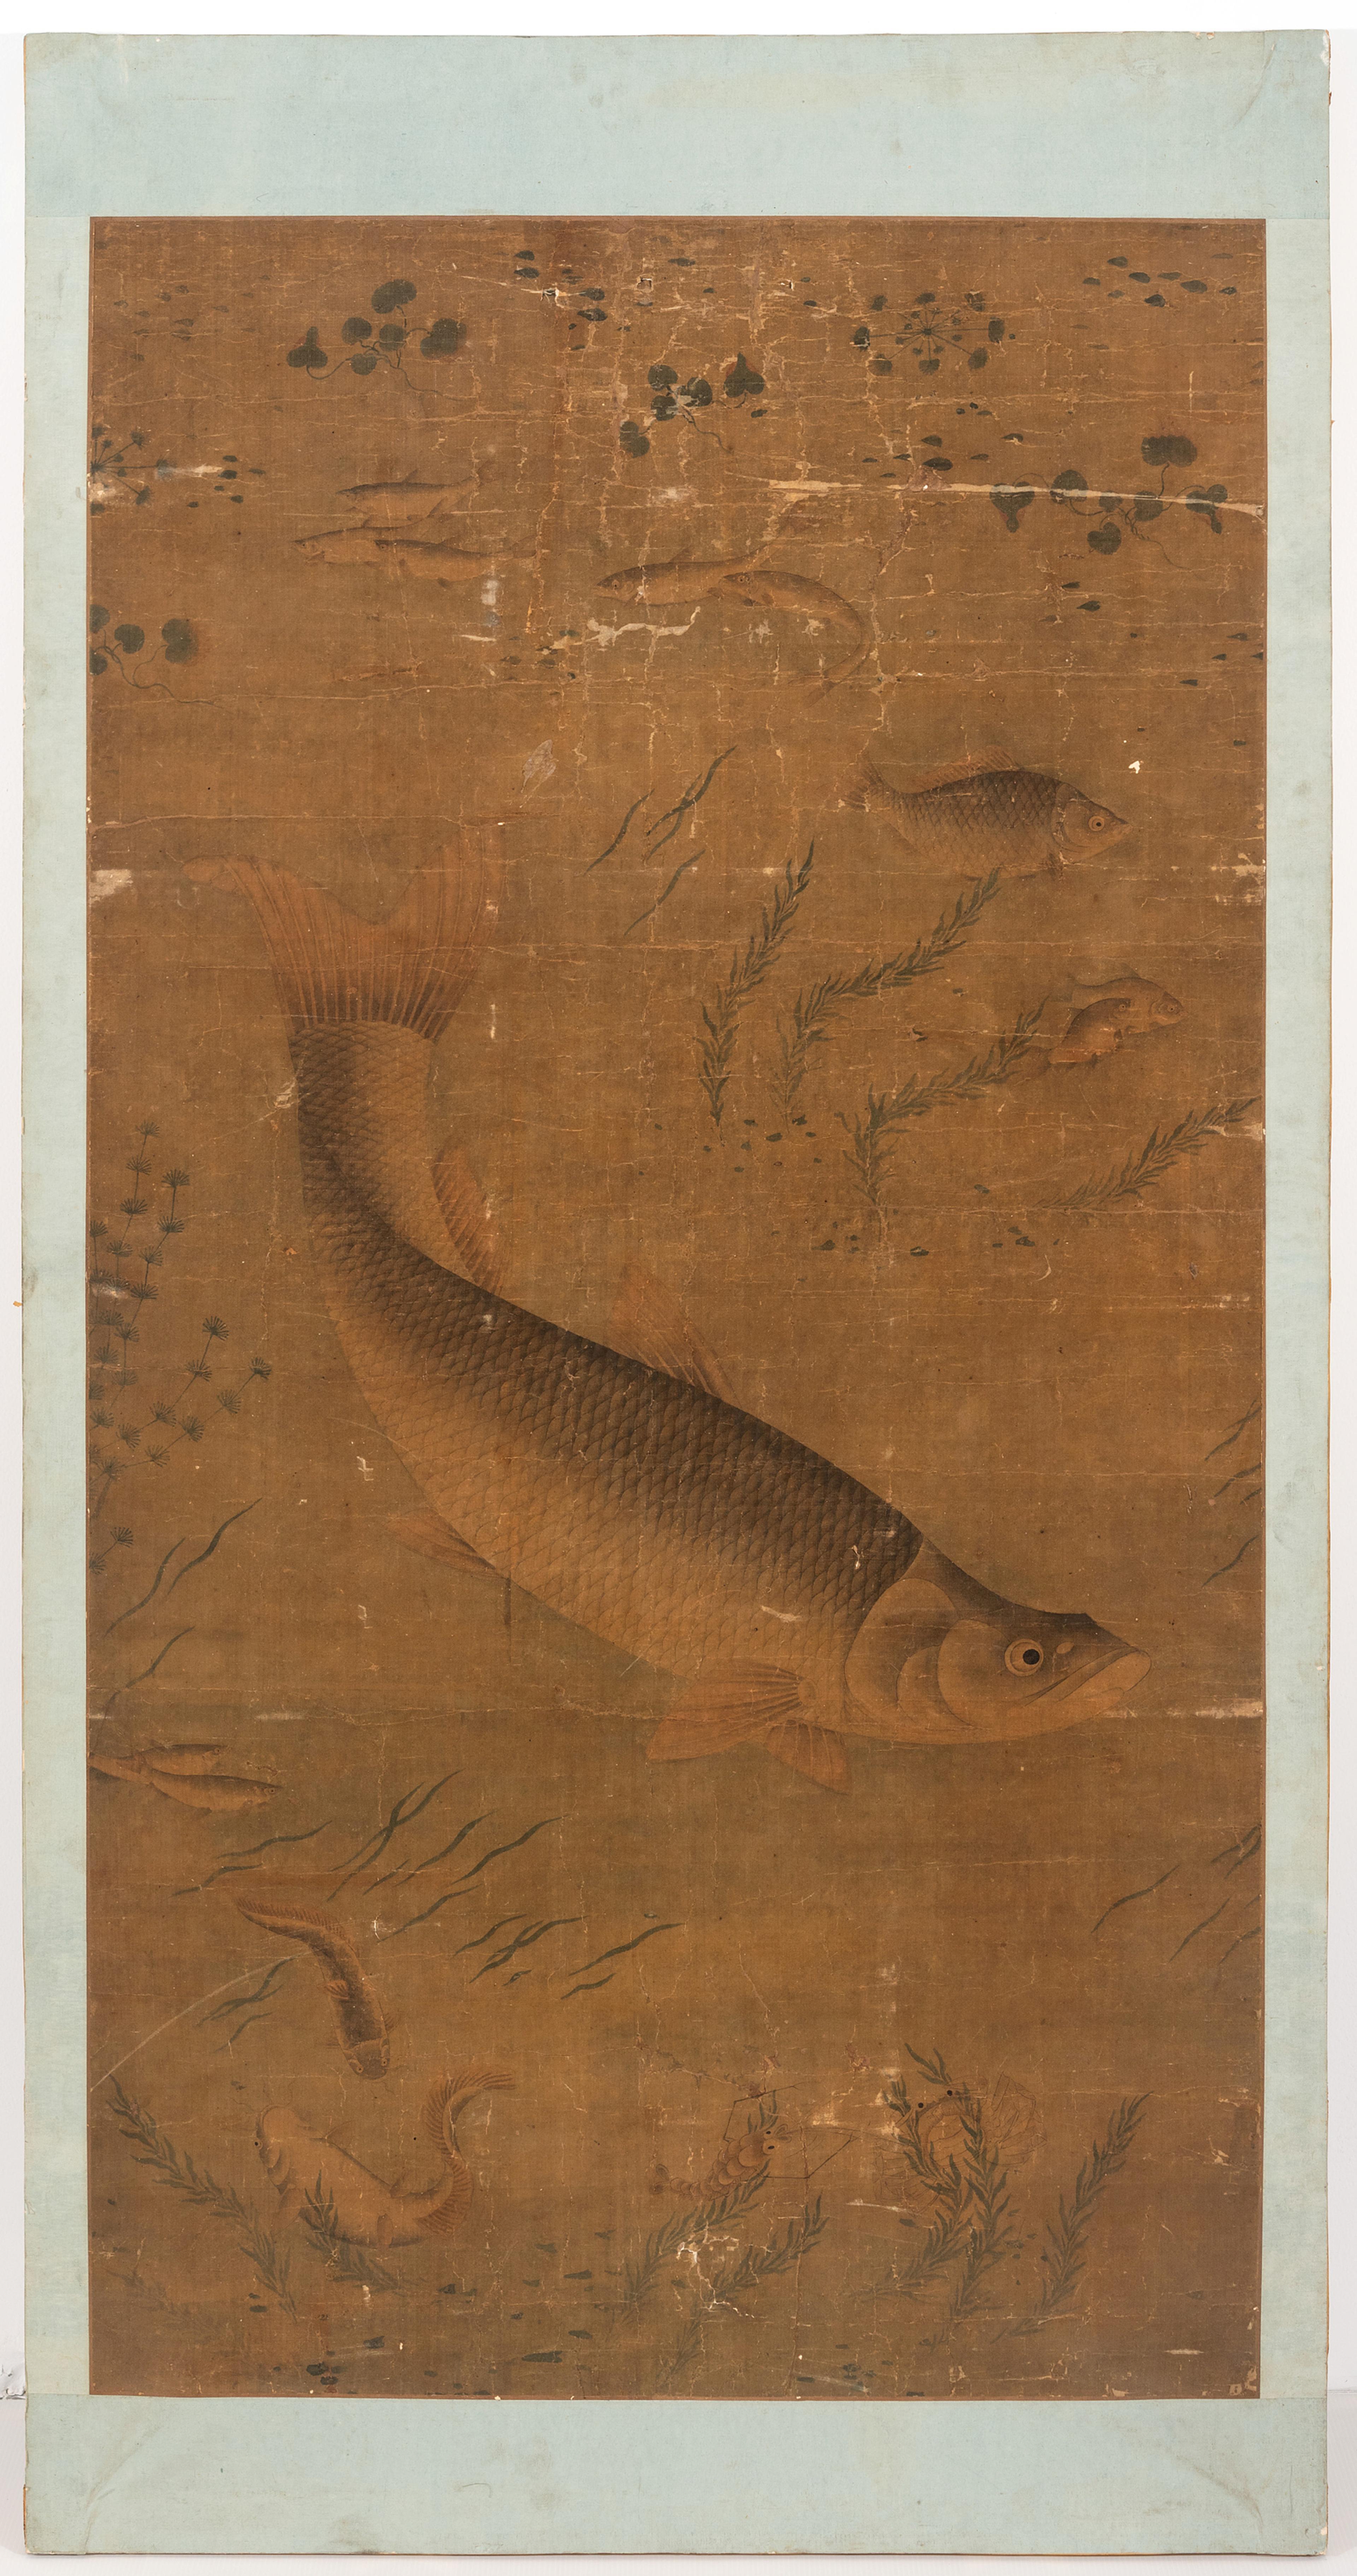 Et kinesisk maleri av en fisk, omgitt av alger